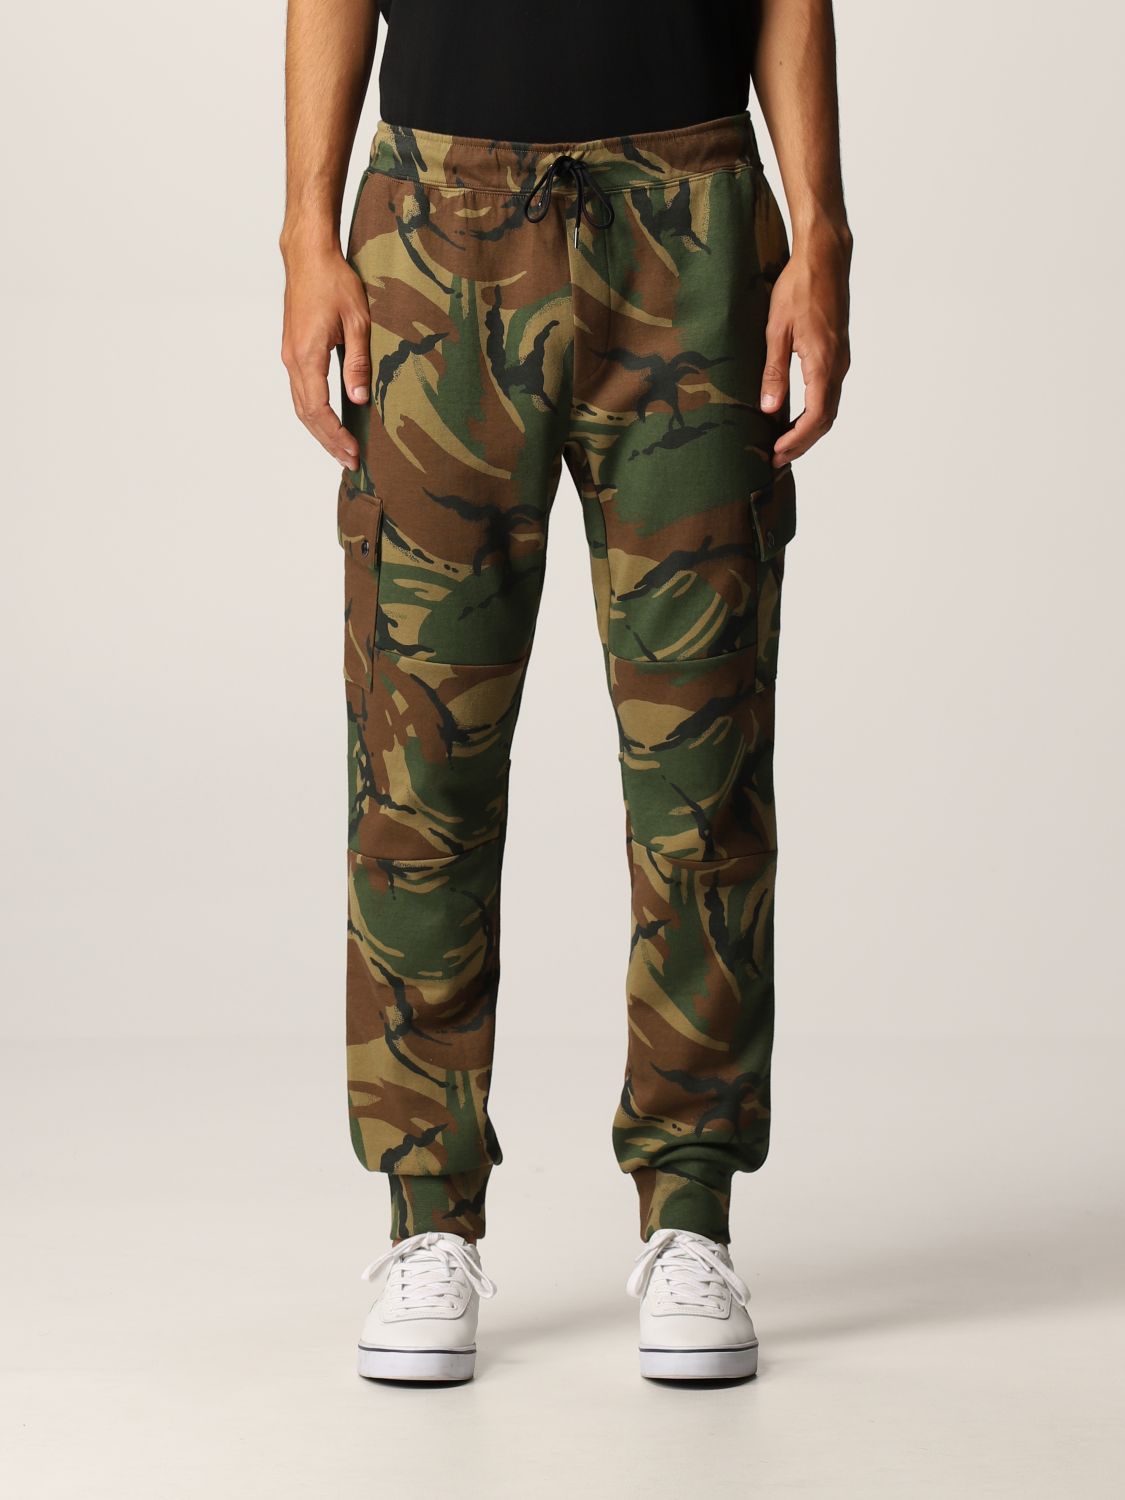 Pantalone jogging con tasche camouflage Giglio.com Bambino Abbigliamento Pantaloni e jeans Pantaloni Pantaloni militari 